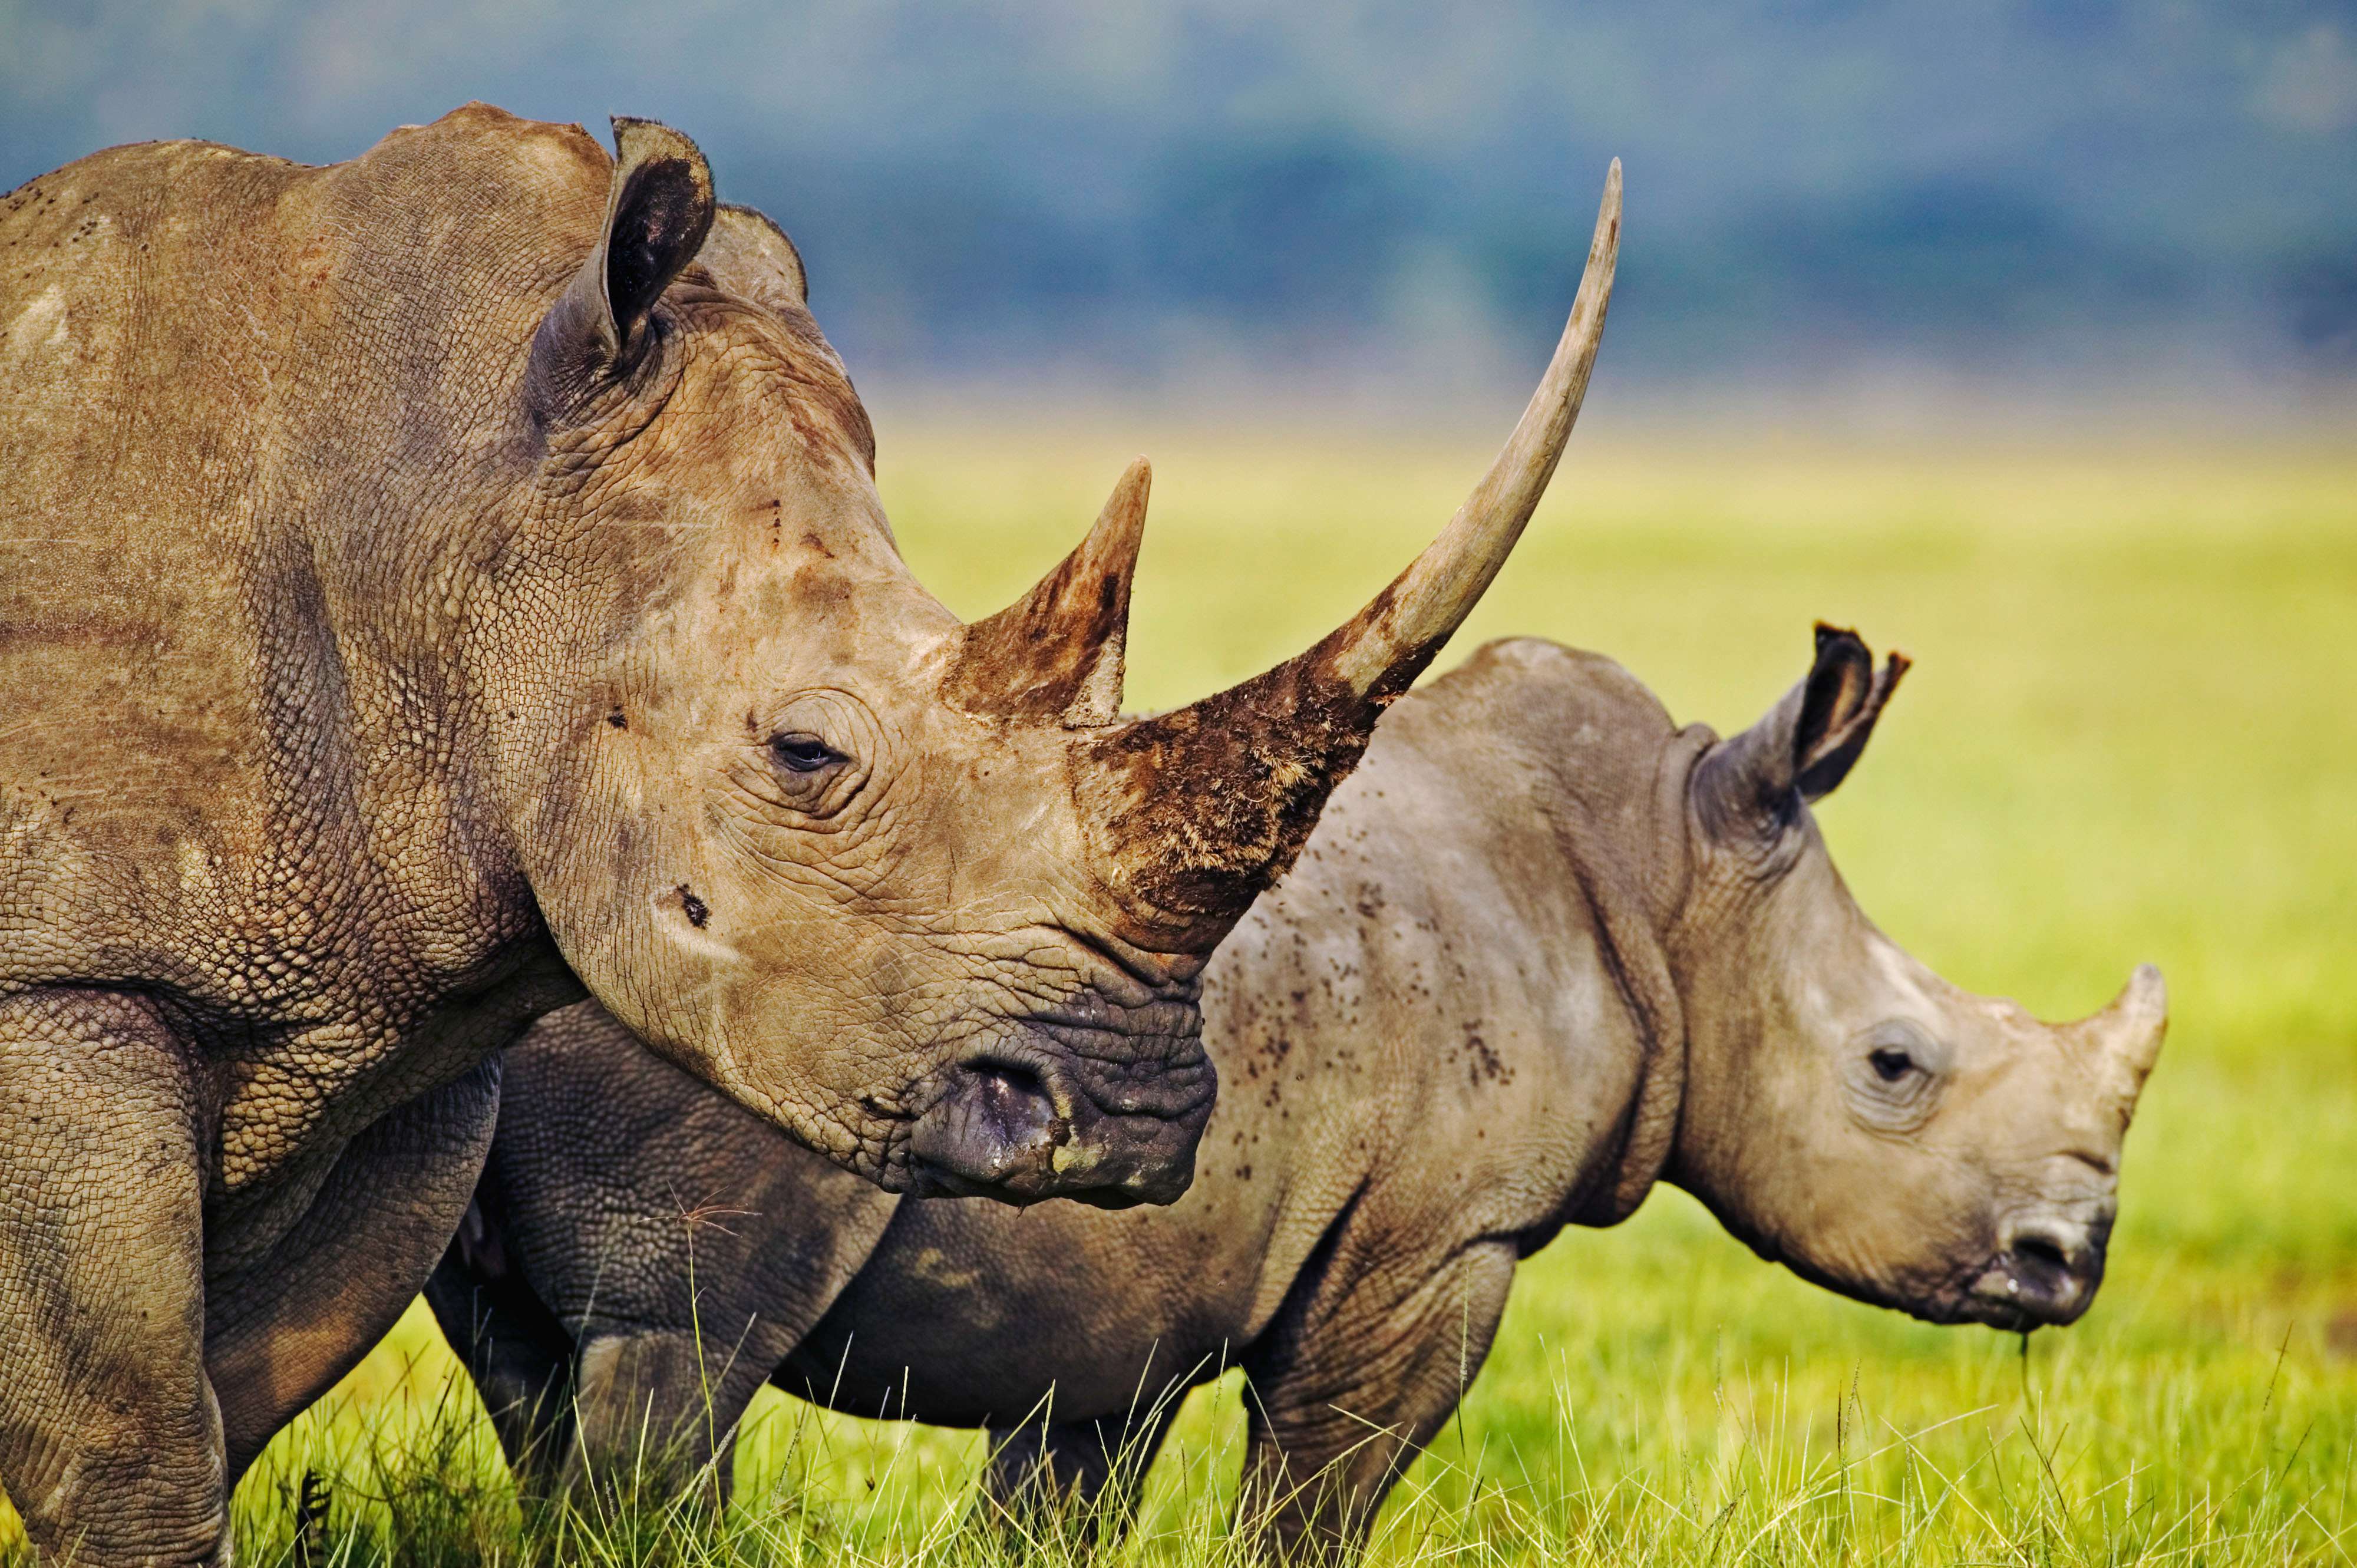 White rhino grazing in Kenya © Martin Harvey/WWF-Canon